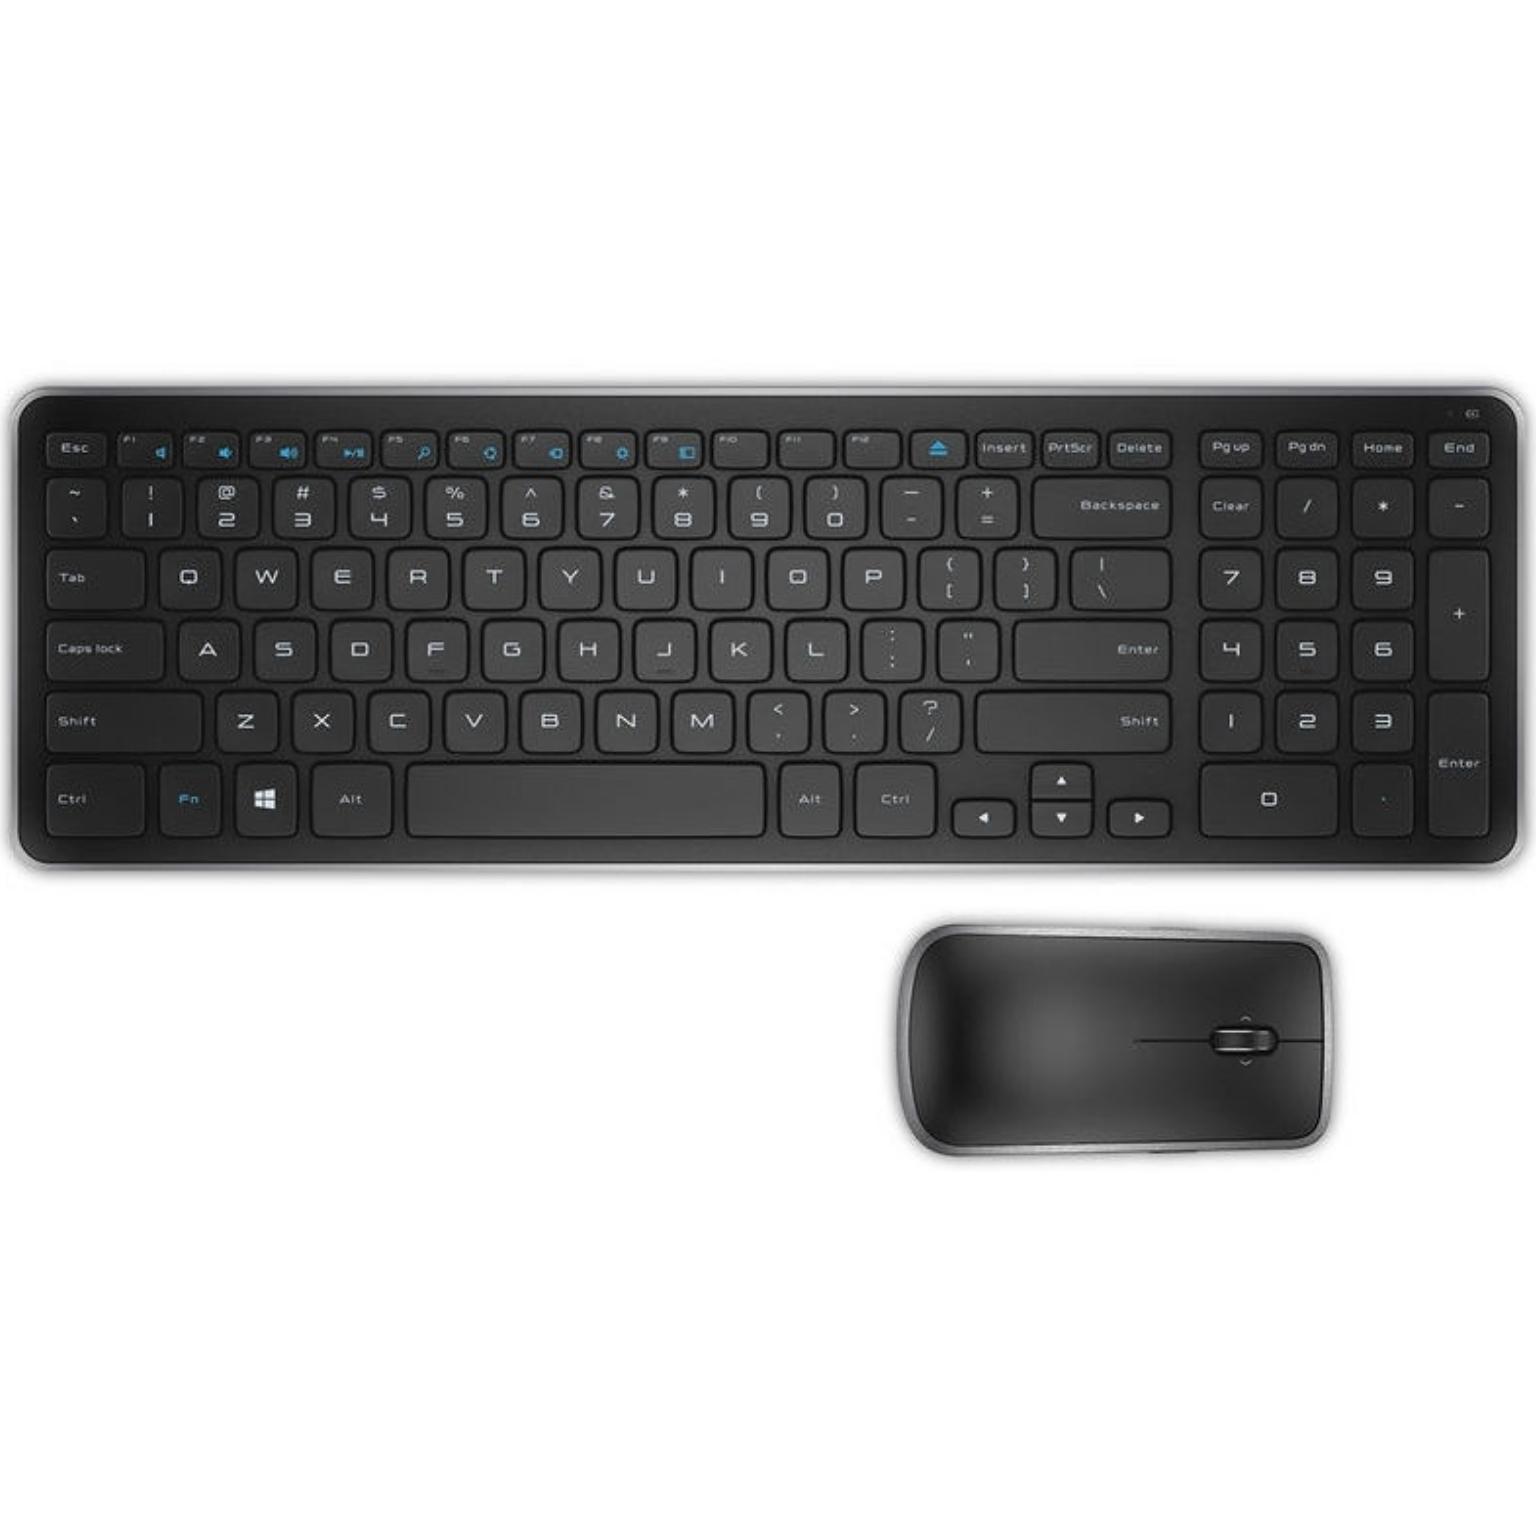 Draadloos toetsenbord met muis - Dell - Merk: Dell KM714, Indeling: - Rubberdome, Aansluiting: Draadloos USB, Extra: Compact, Voeding: 1xAA/2xAAA batterijen (incl).